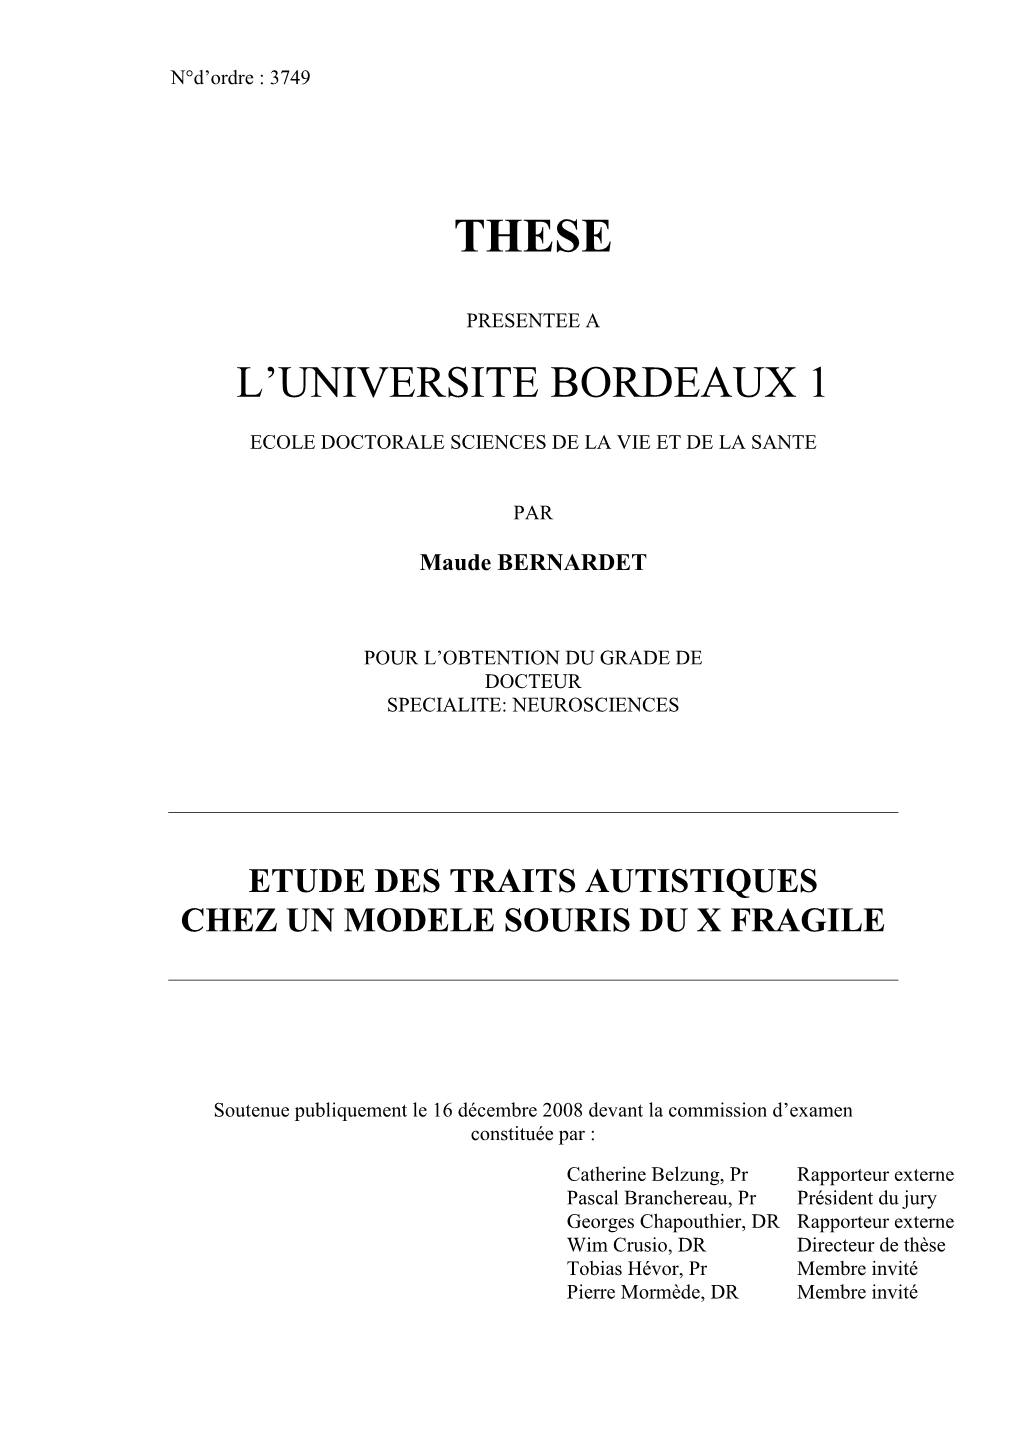 L'universite Bordeaux 1